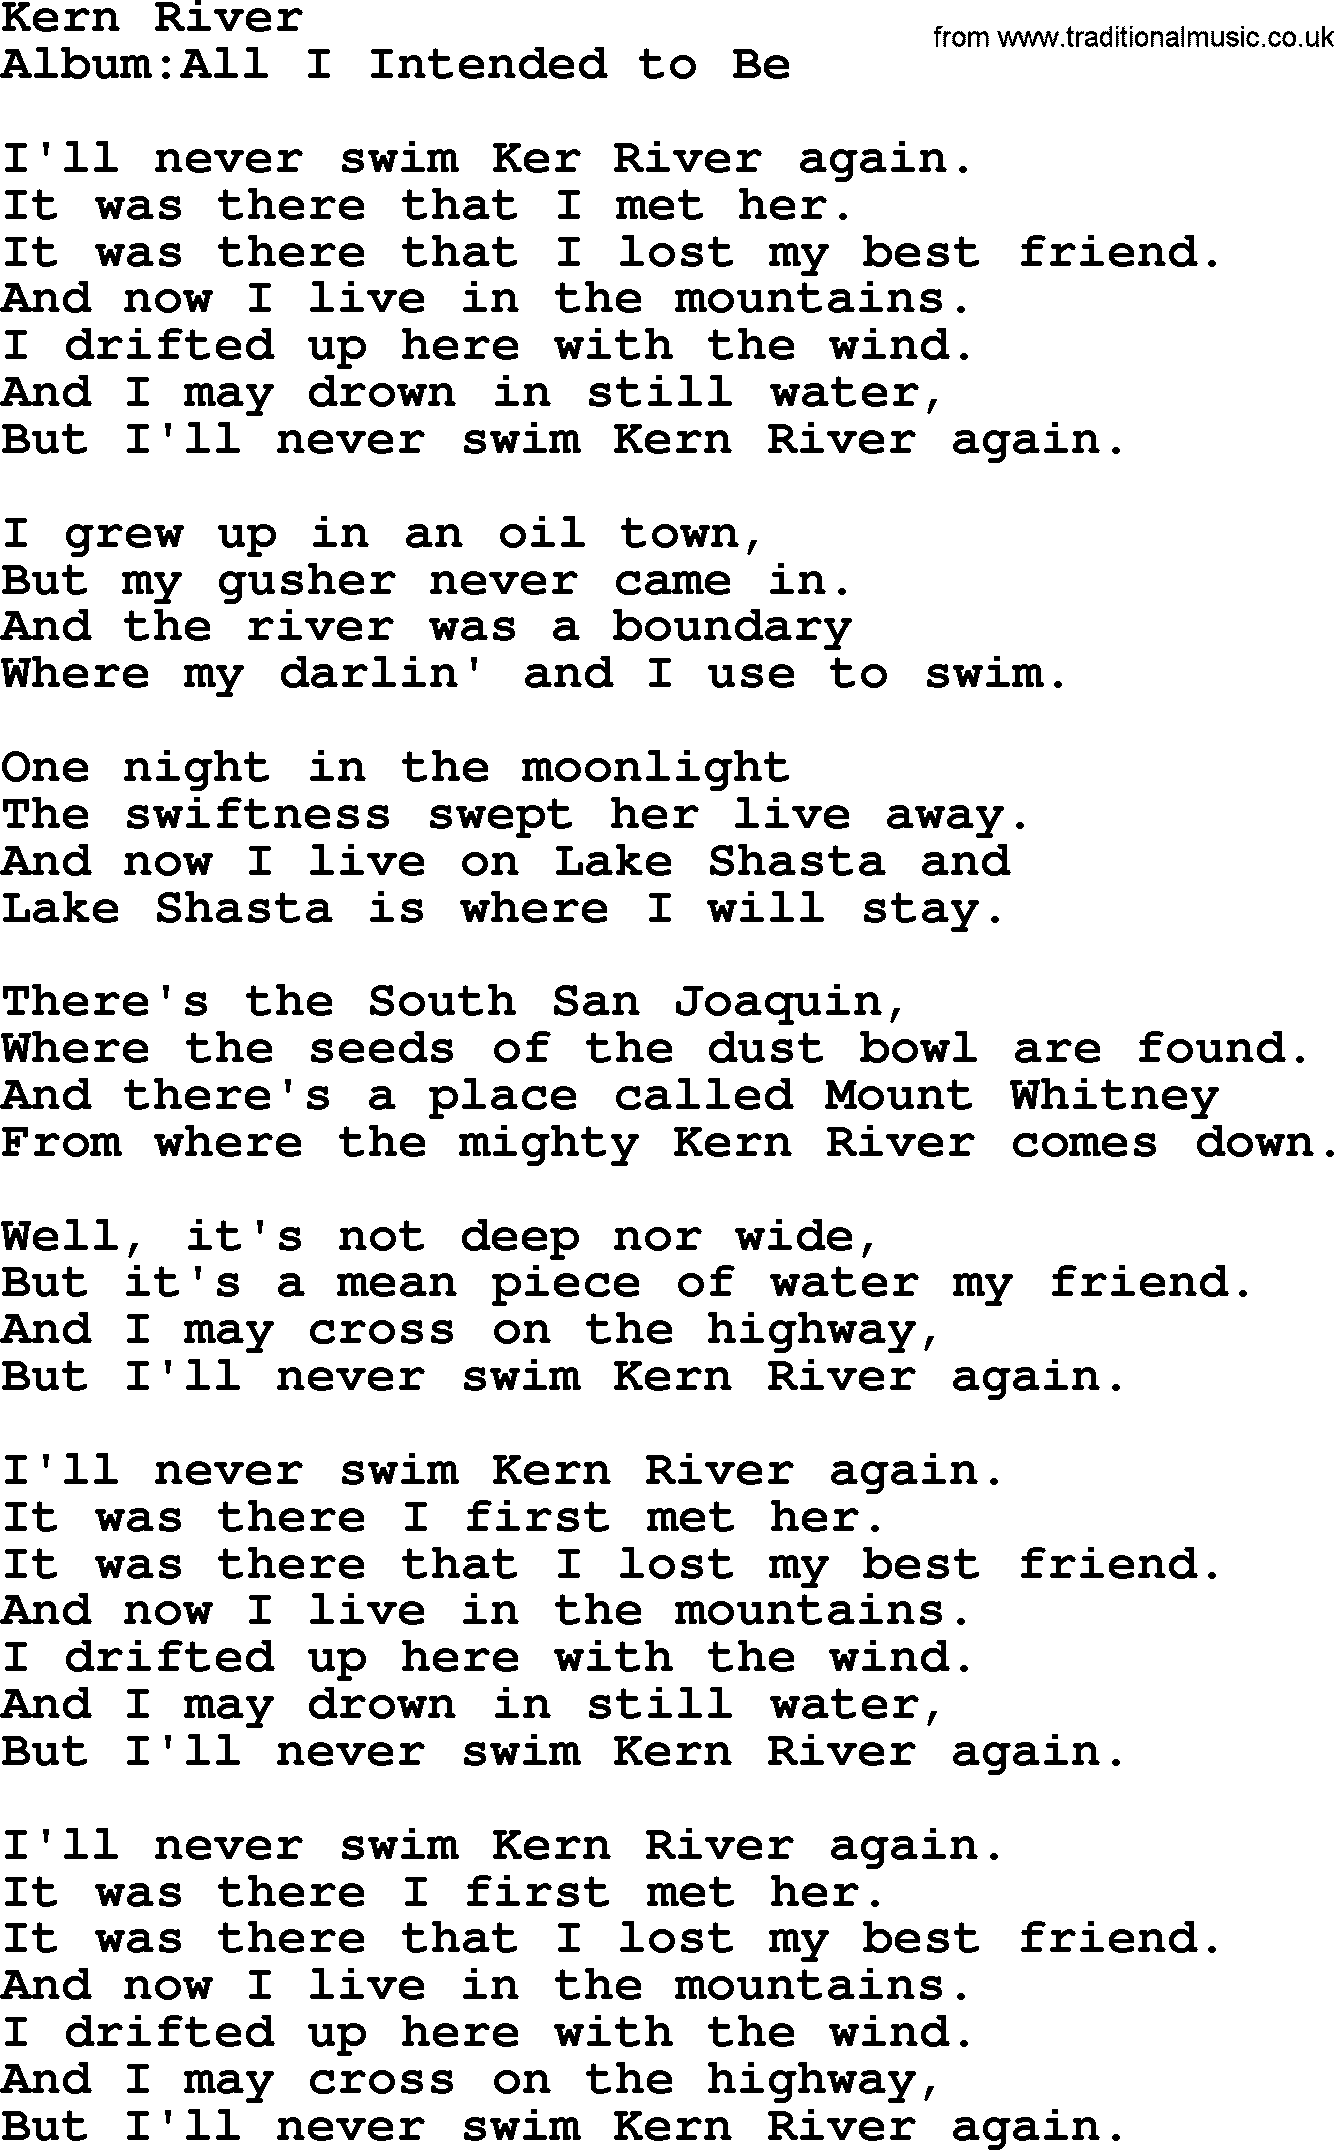 Emmylou Harris song: Kern River lyrics